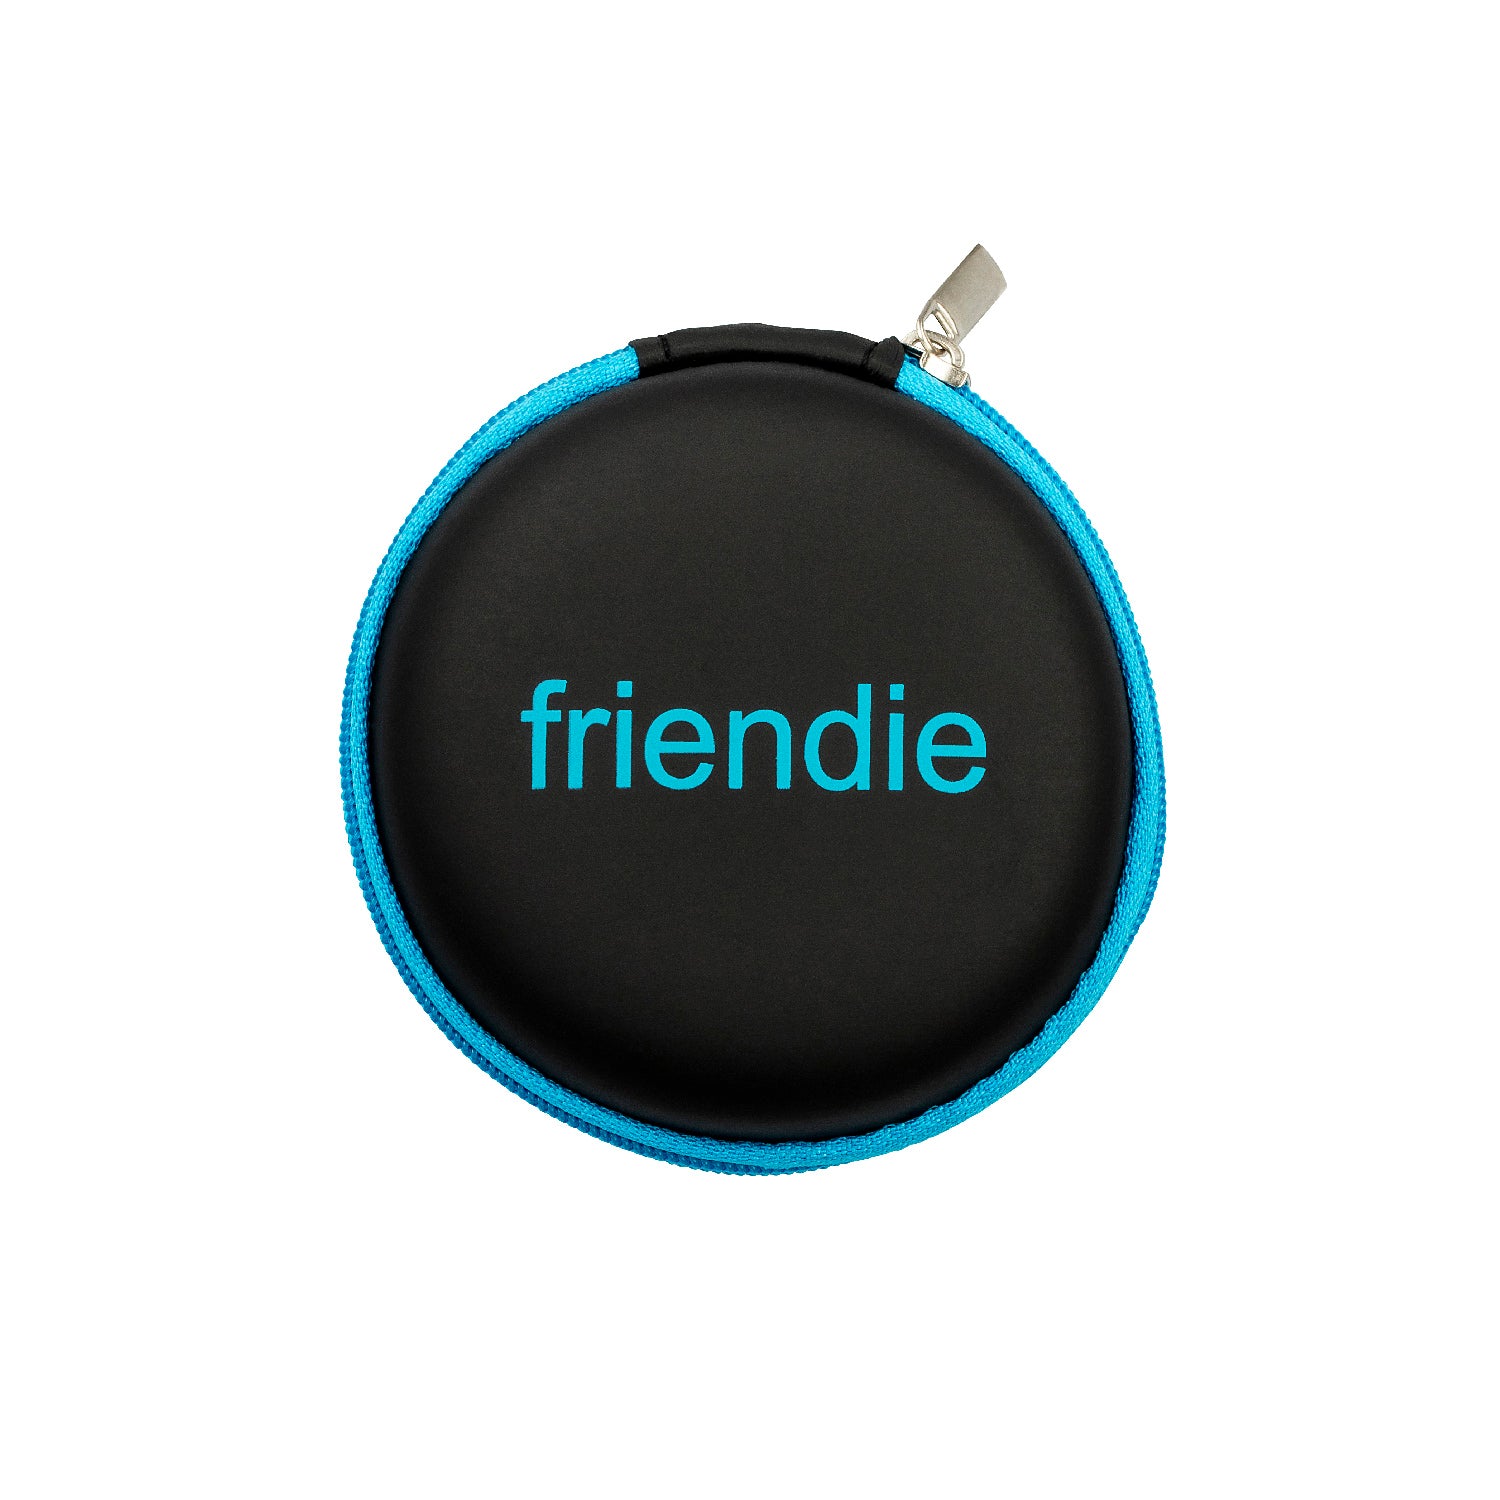 Friendie Deluxe Protective Earbud Case in Black (Small), Bags, Friendie Audio Pty Ltd, Friendie Audio Pty Ltd